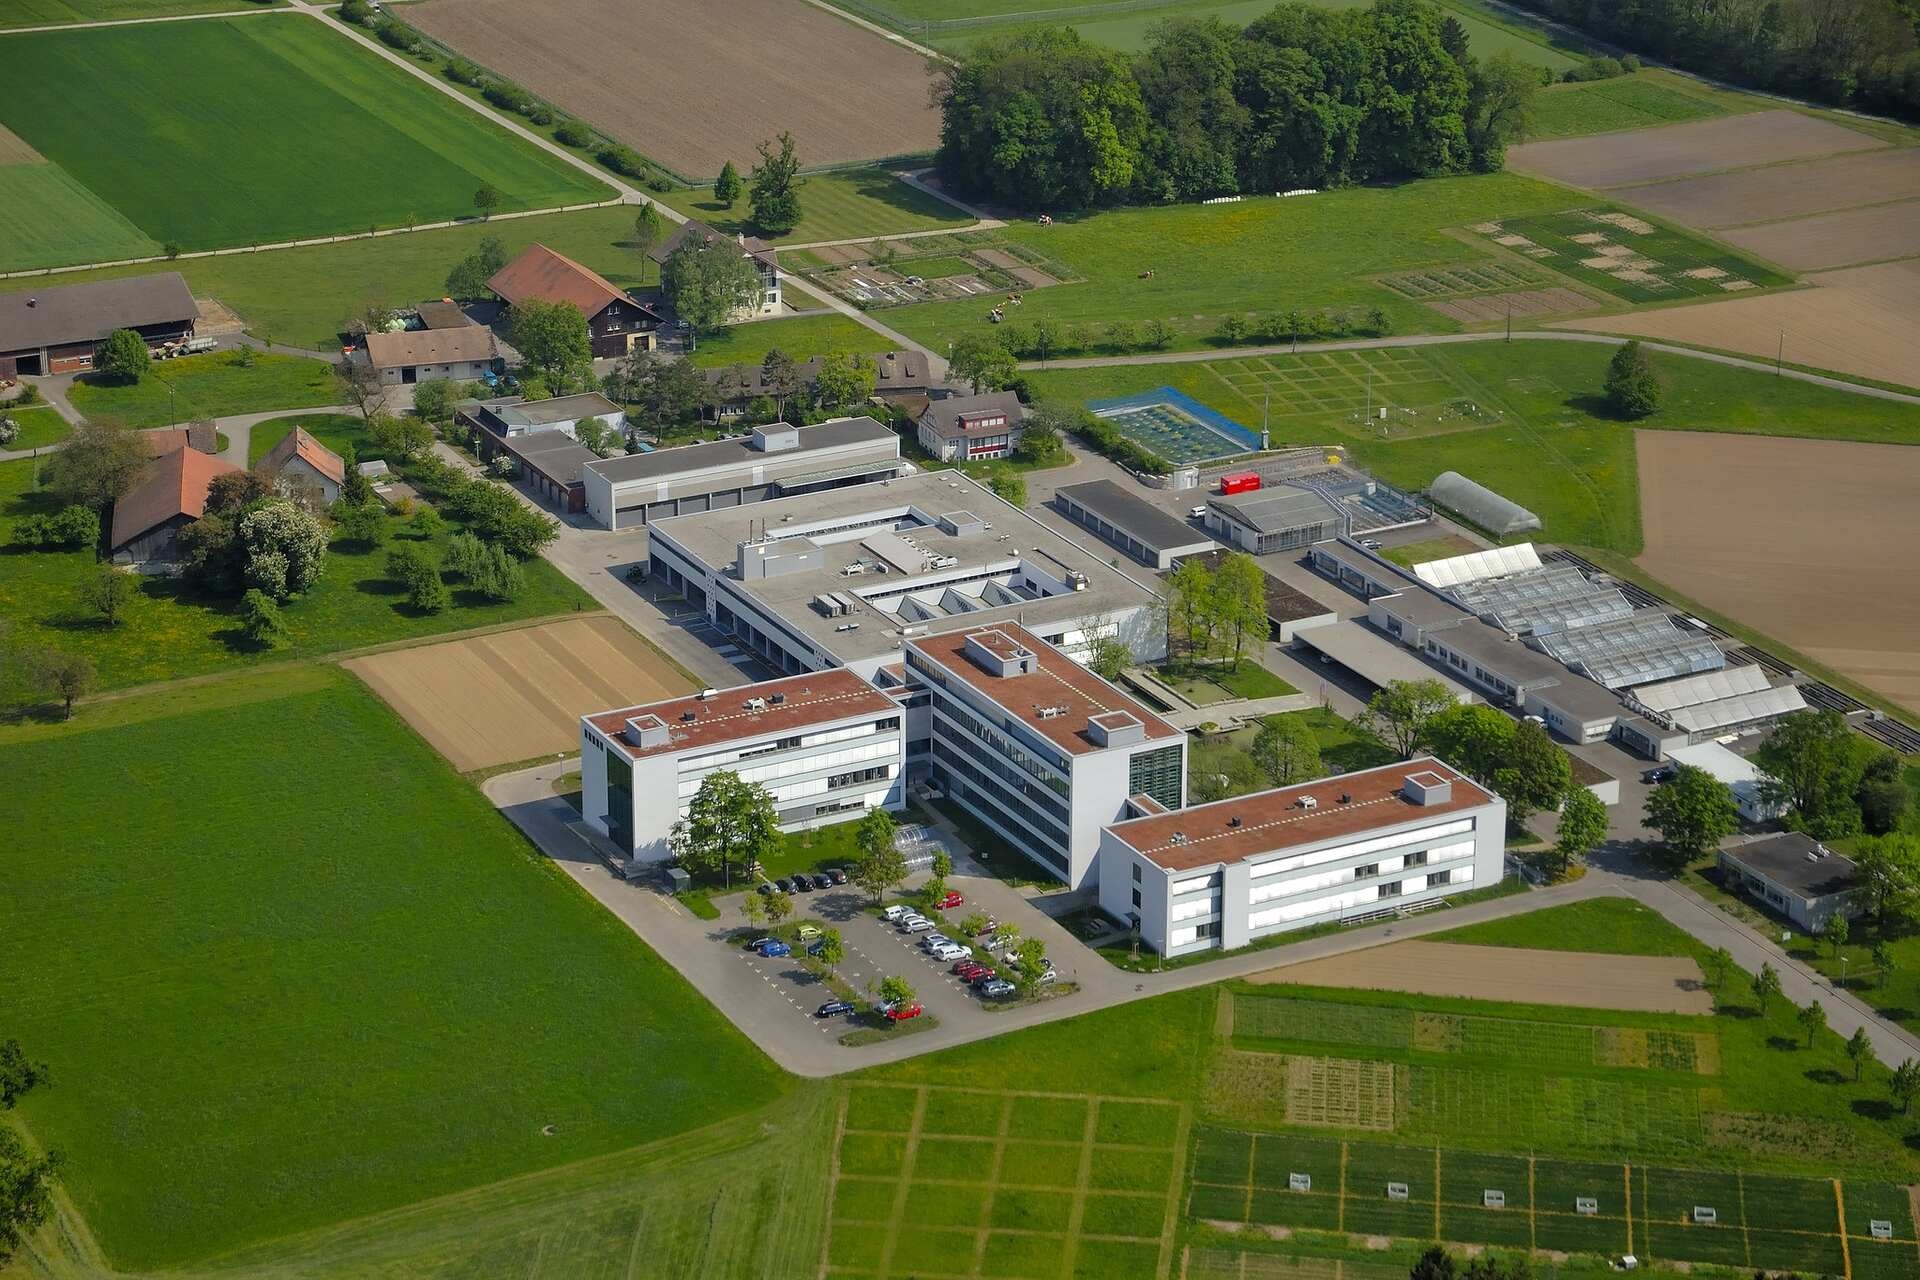 Orzo geneticamente modificato: Agroscope acquisirà conoscenze per oltre tre anni sul comportamento delle piante in campo aperto nel sito di Reckenholz (Zurigo) su autorizzazione Ufficio Federale dell'Ambiente